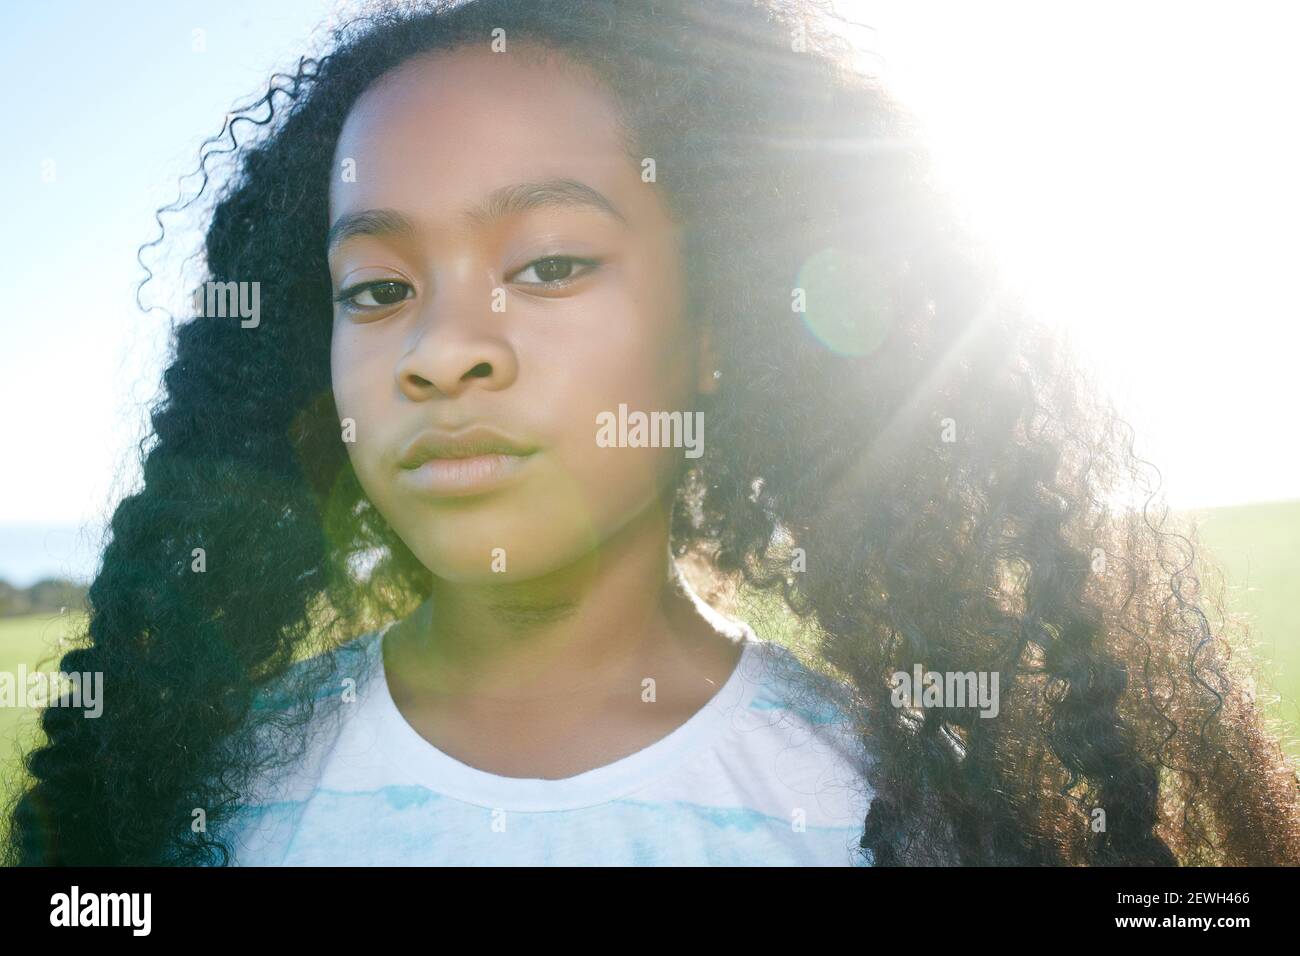 Jeune fille de race mixte avec de longs cheveux bouclés noirs avec une expression sérieuse Banque D'Images